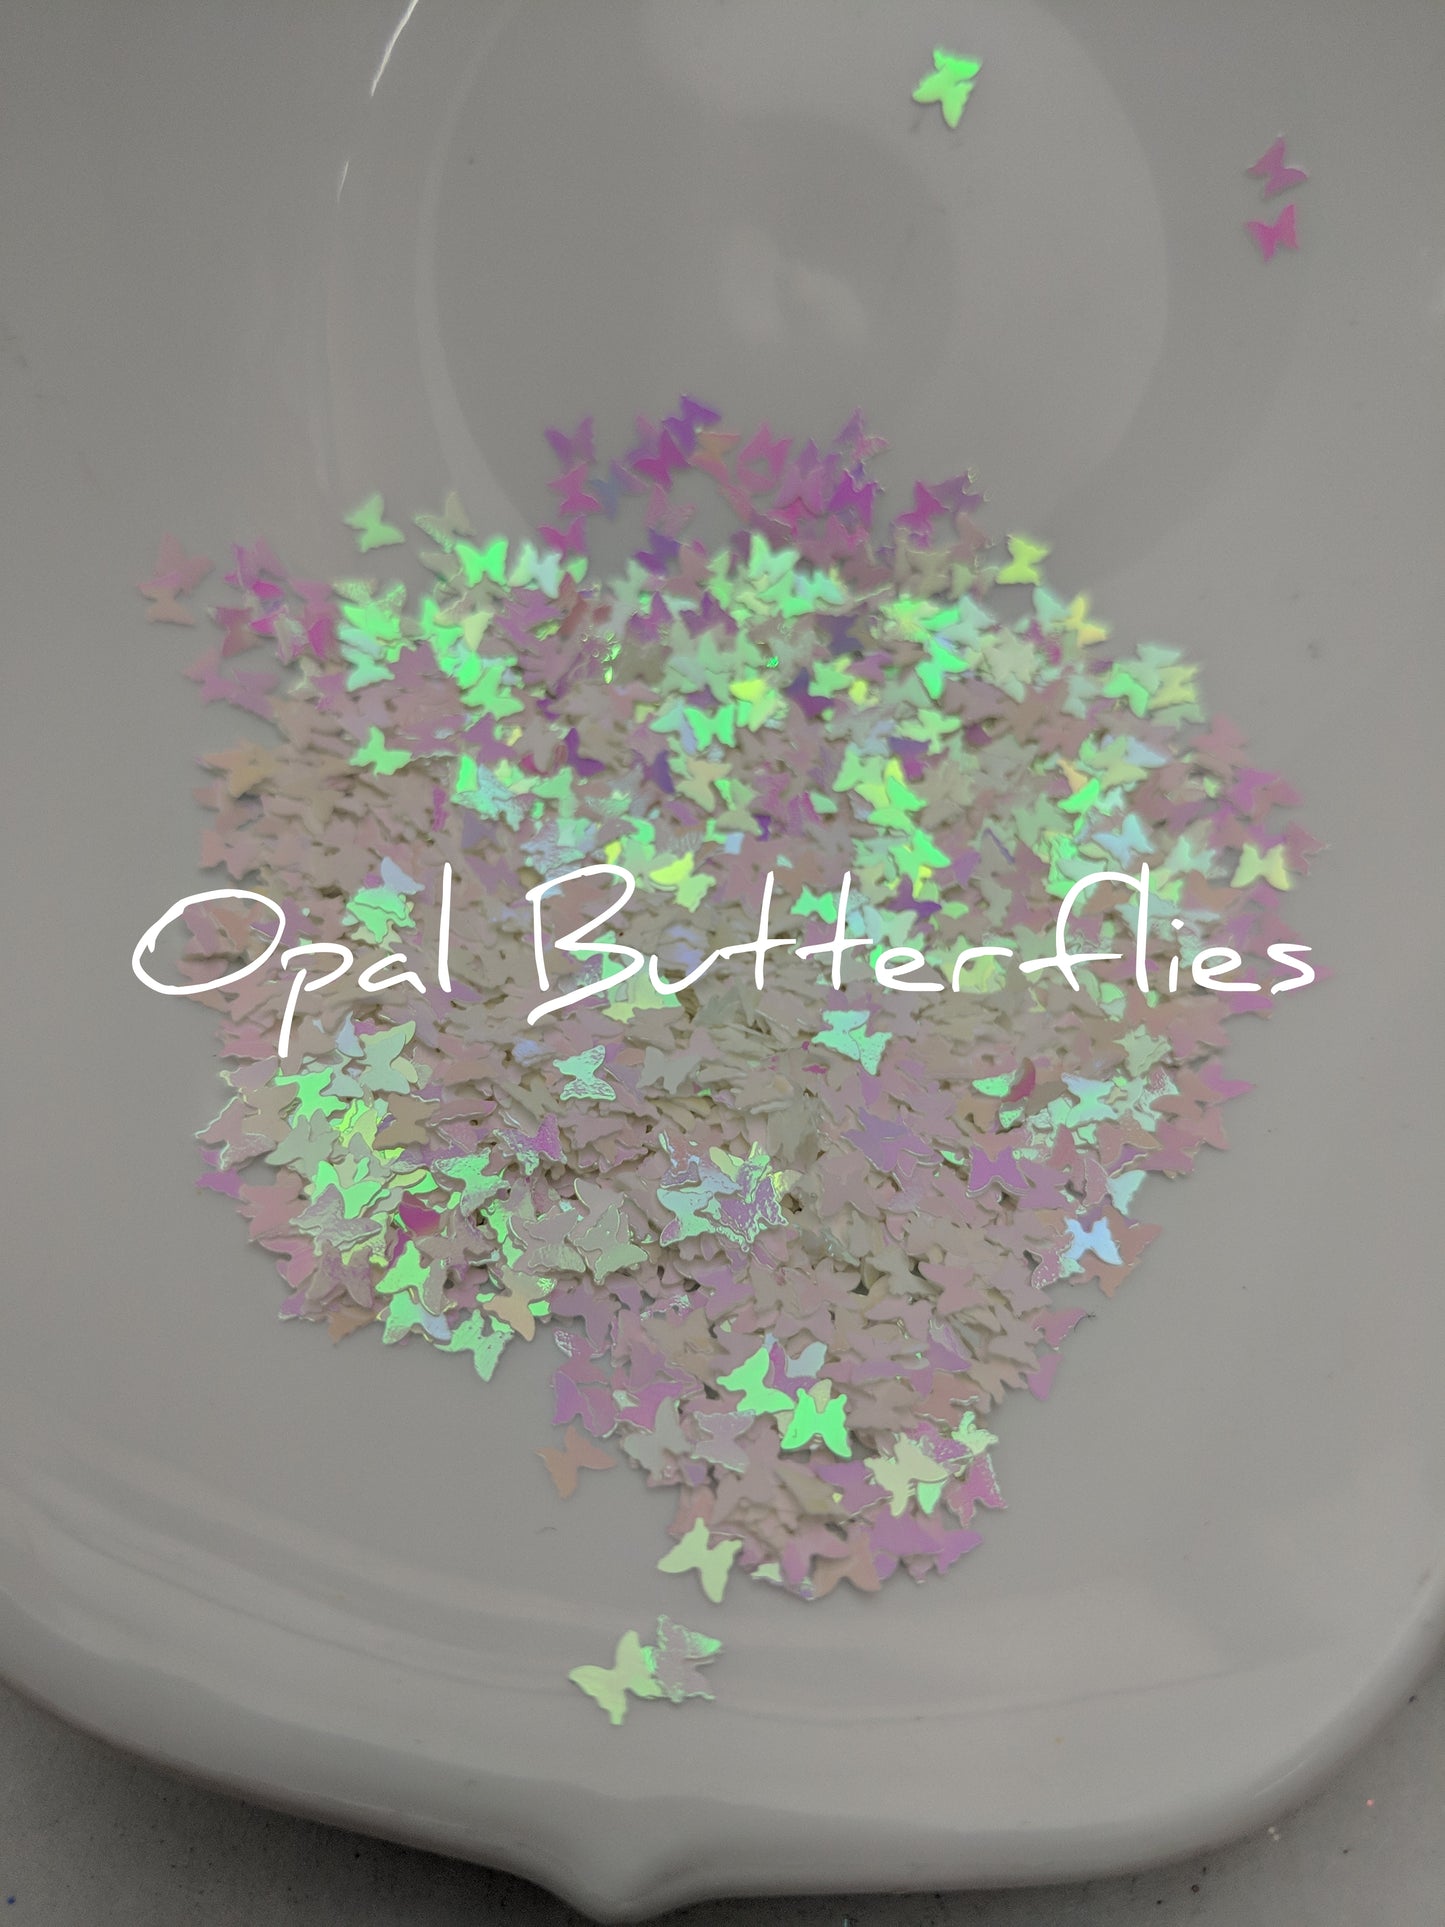 Opal Butterflies